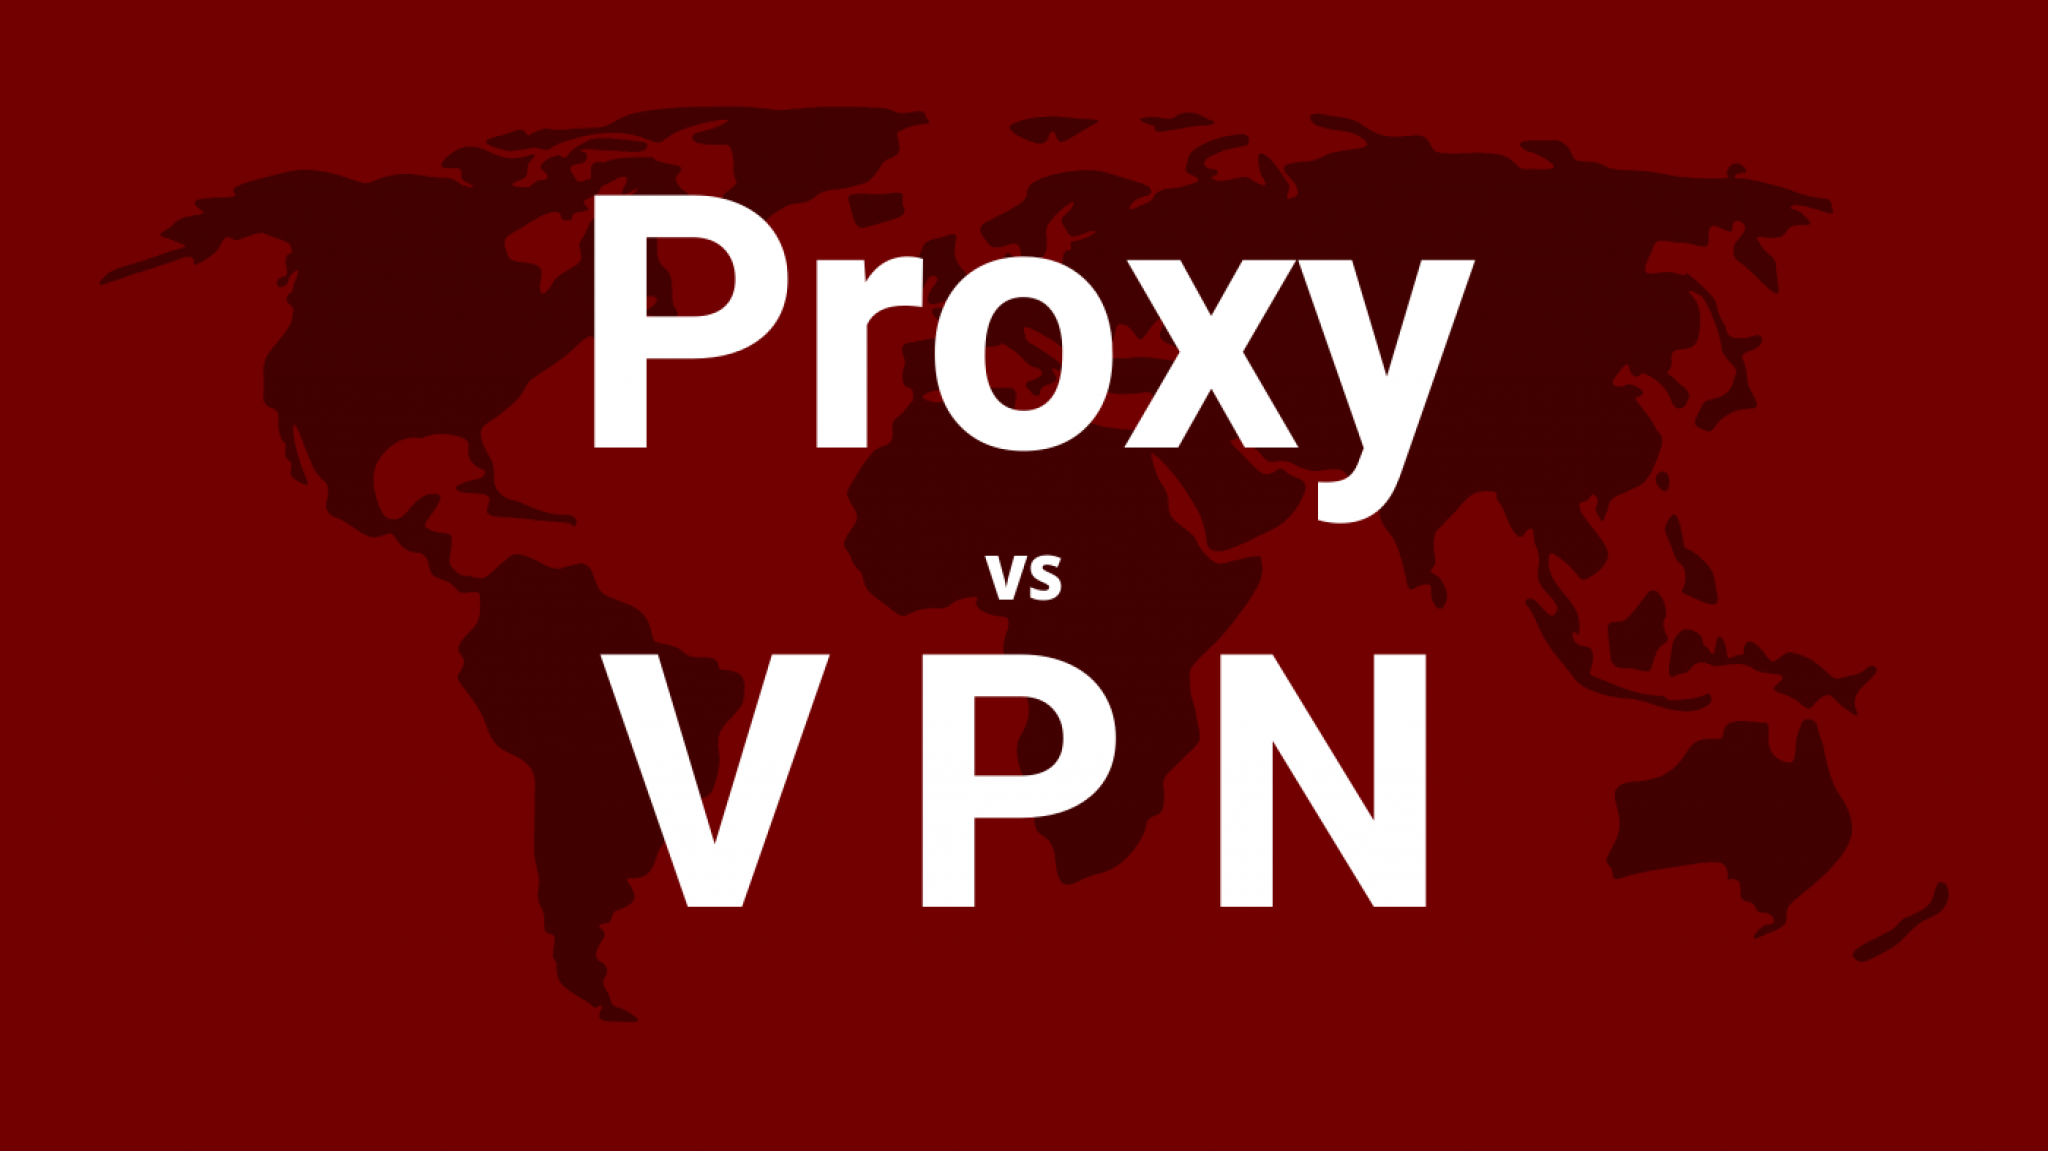 is a proxy a vpn